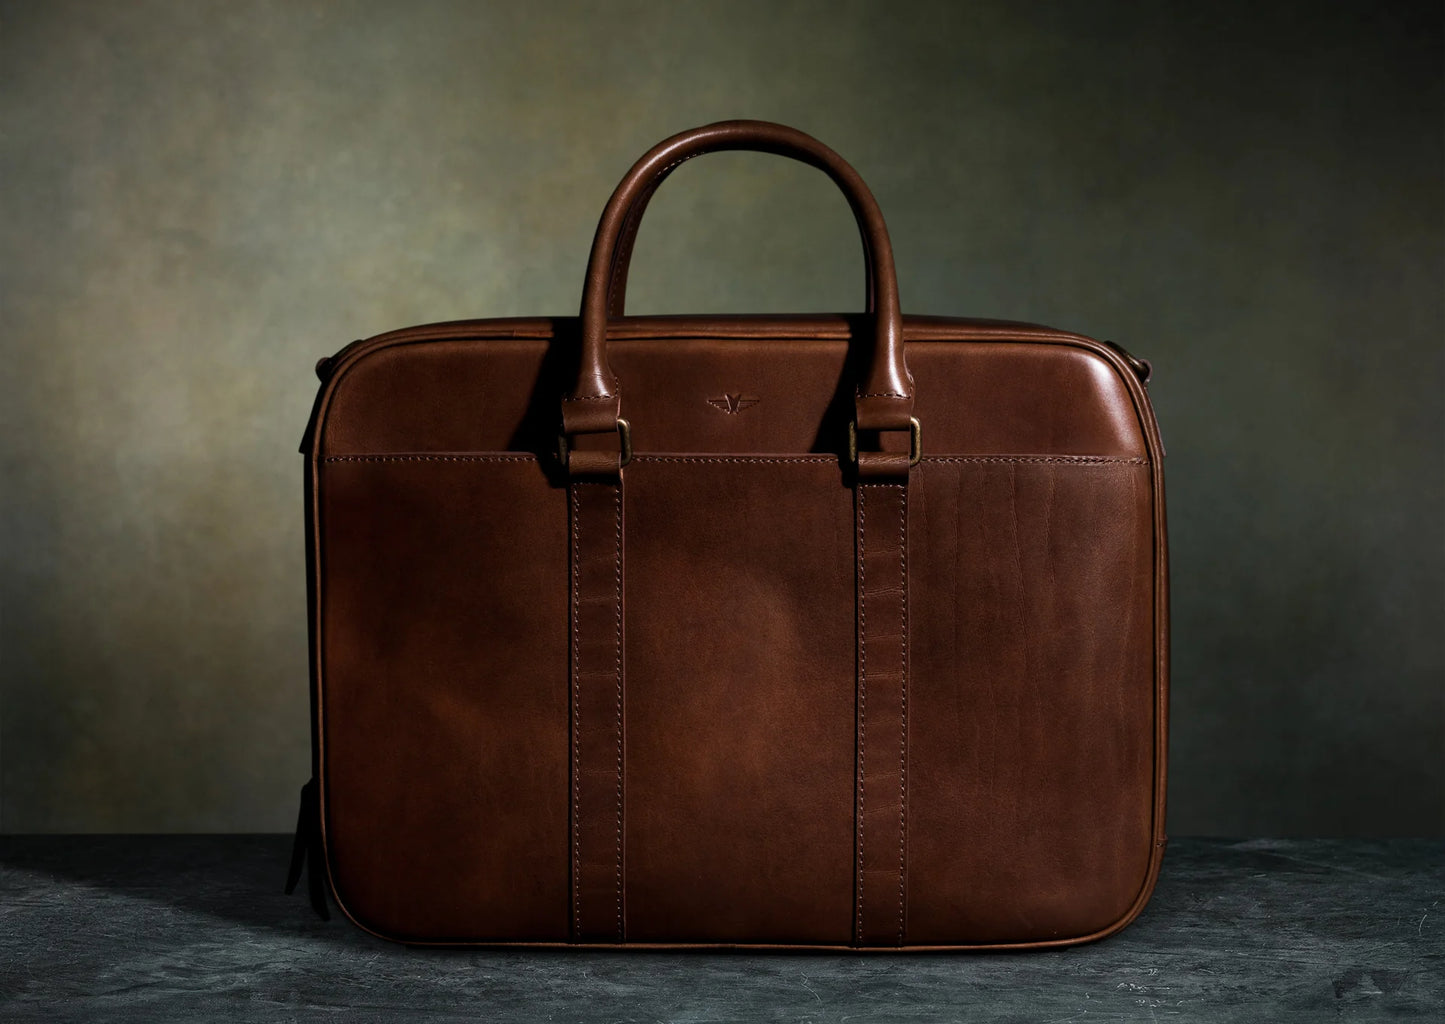 Leather Duffle Executive Bag